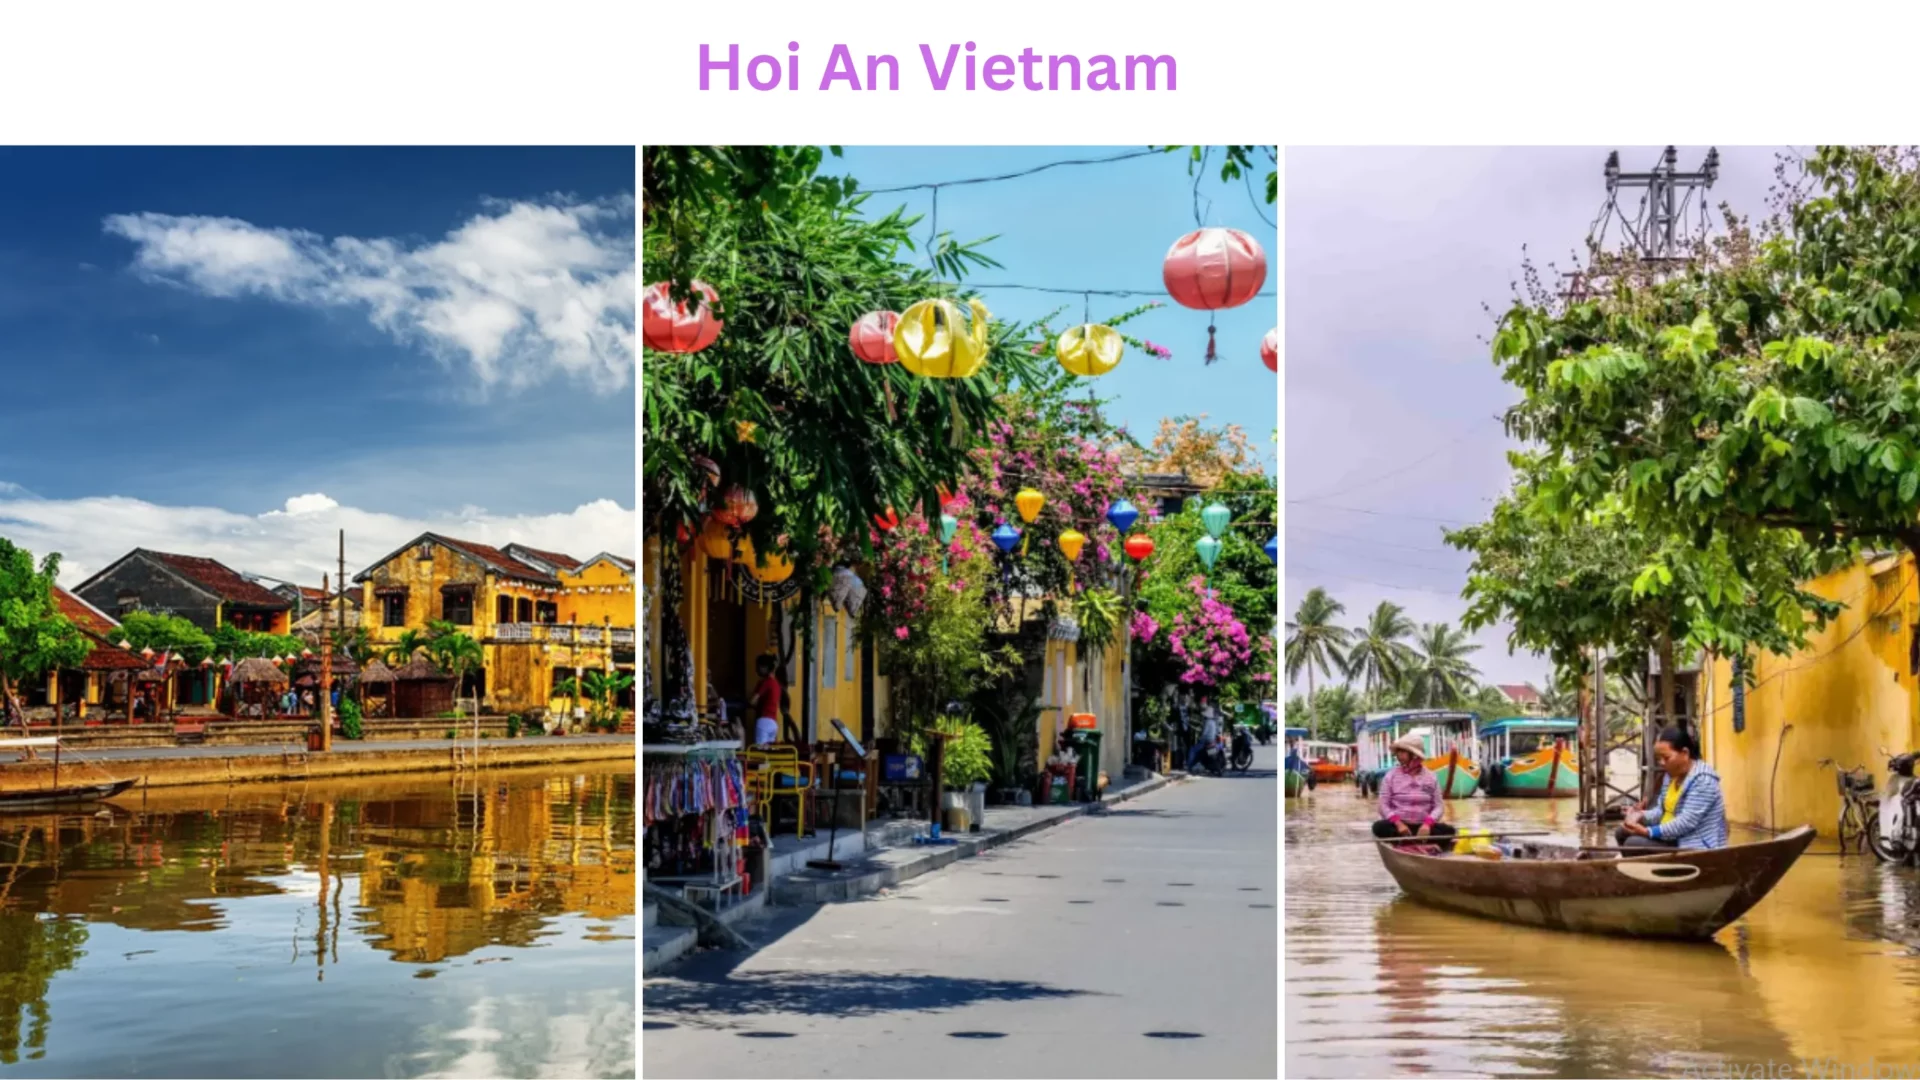 Solo Travel Destination: Hoi An, Vietnam